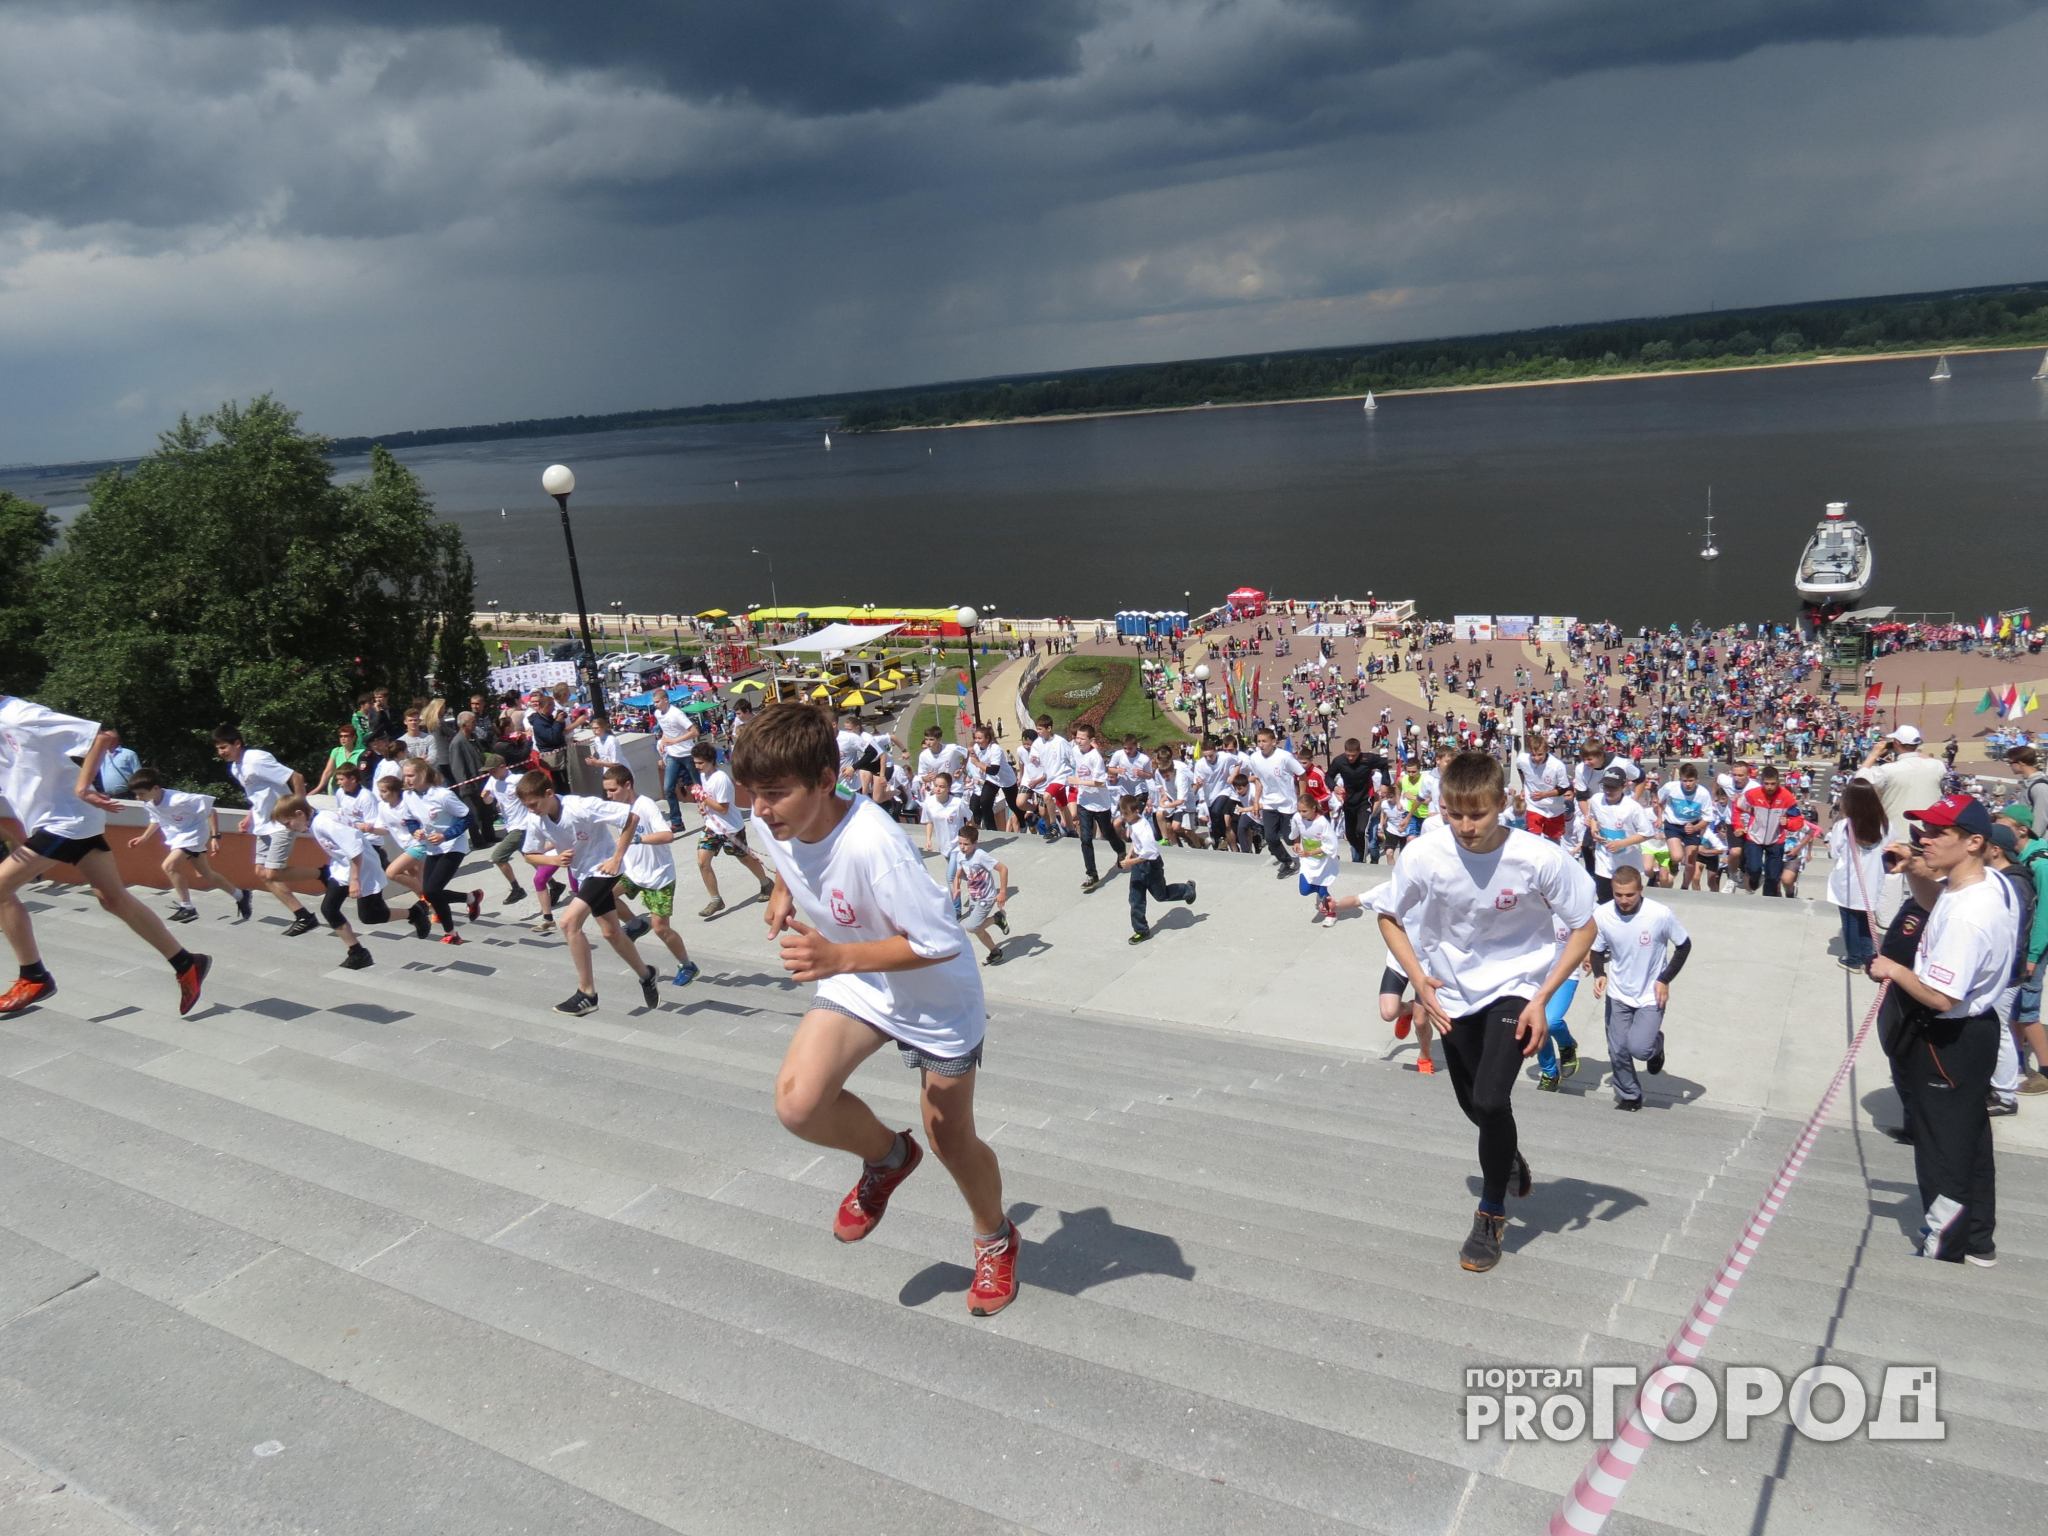 В Нижнем Новгороде почти 800 спортсменов примут участие в праздничном забеге